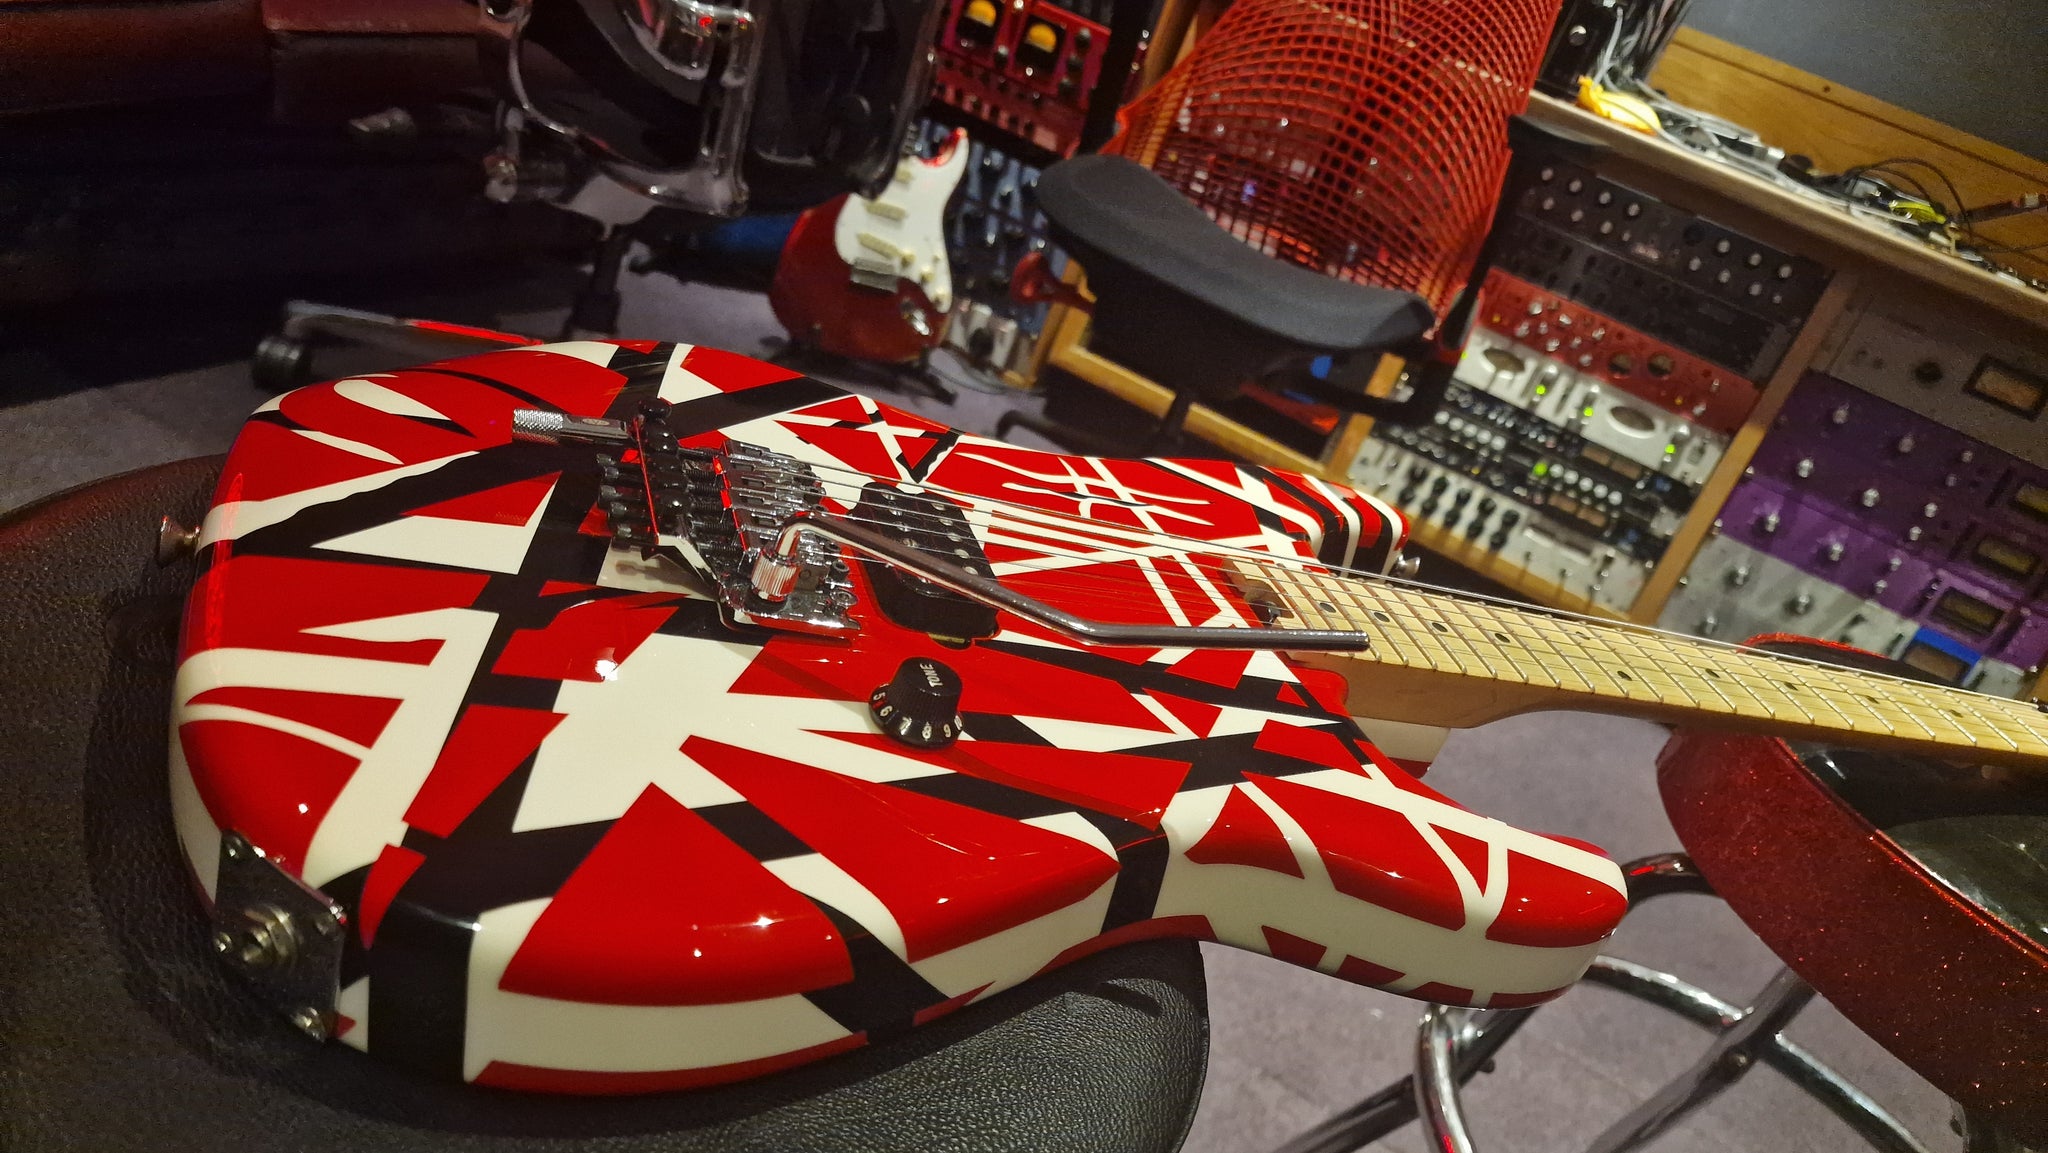 Guitarra Evh Striped Series Rbw Red Black White - Eddie Van Halen Signature  - Crunch Music